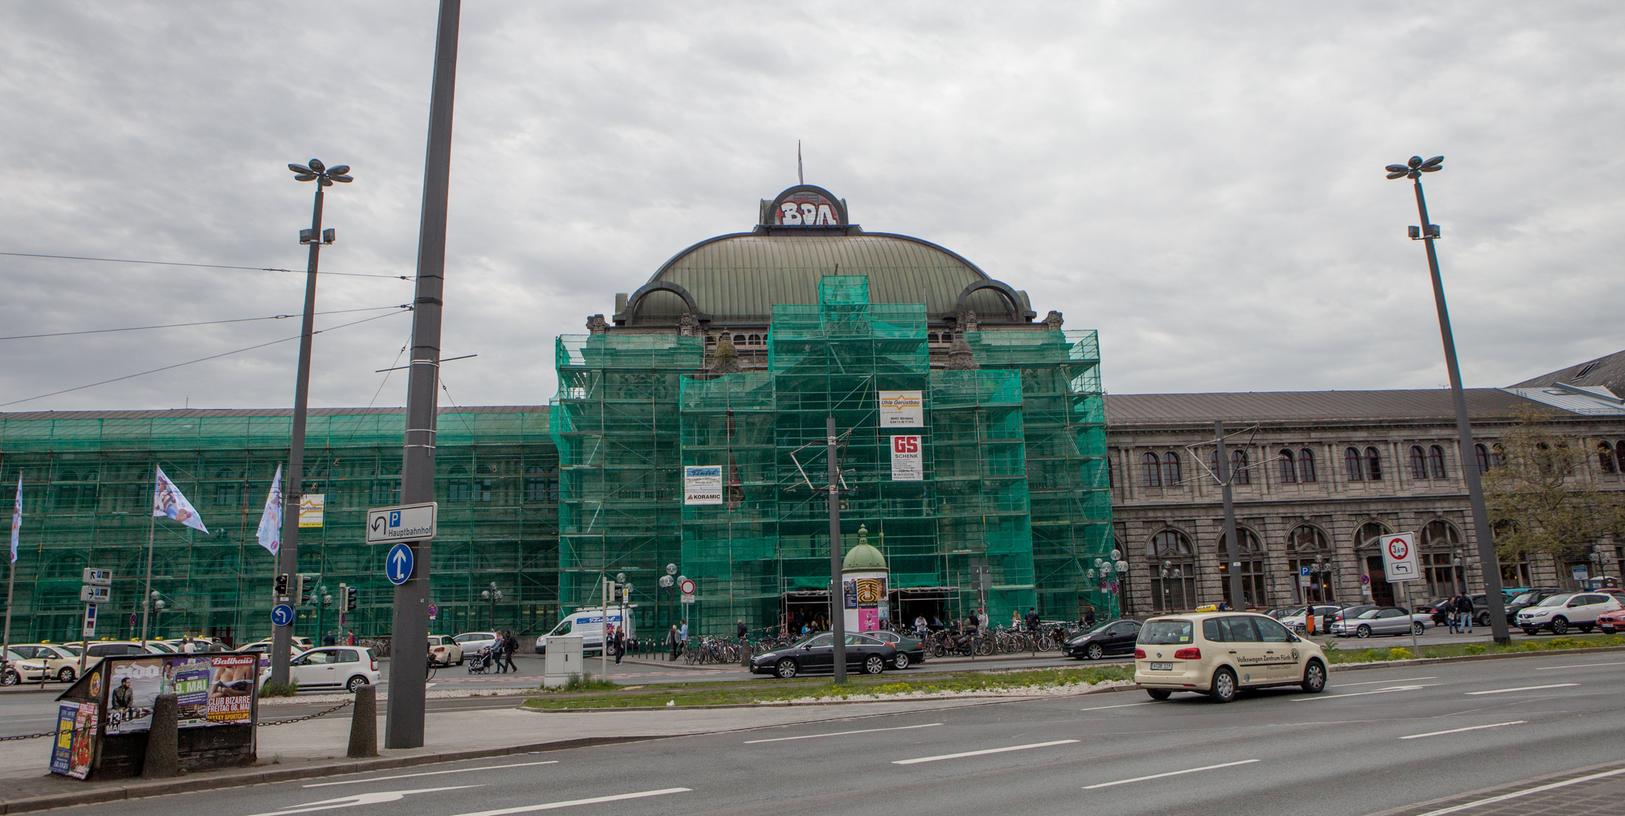 Die Kuppel des Bahnhofs Nürnberg wurde mit dem Zeichen "BDA" besprüht.